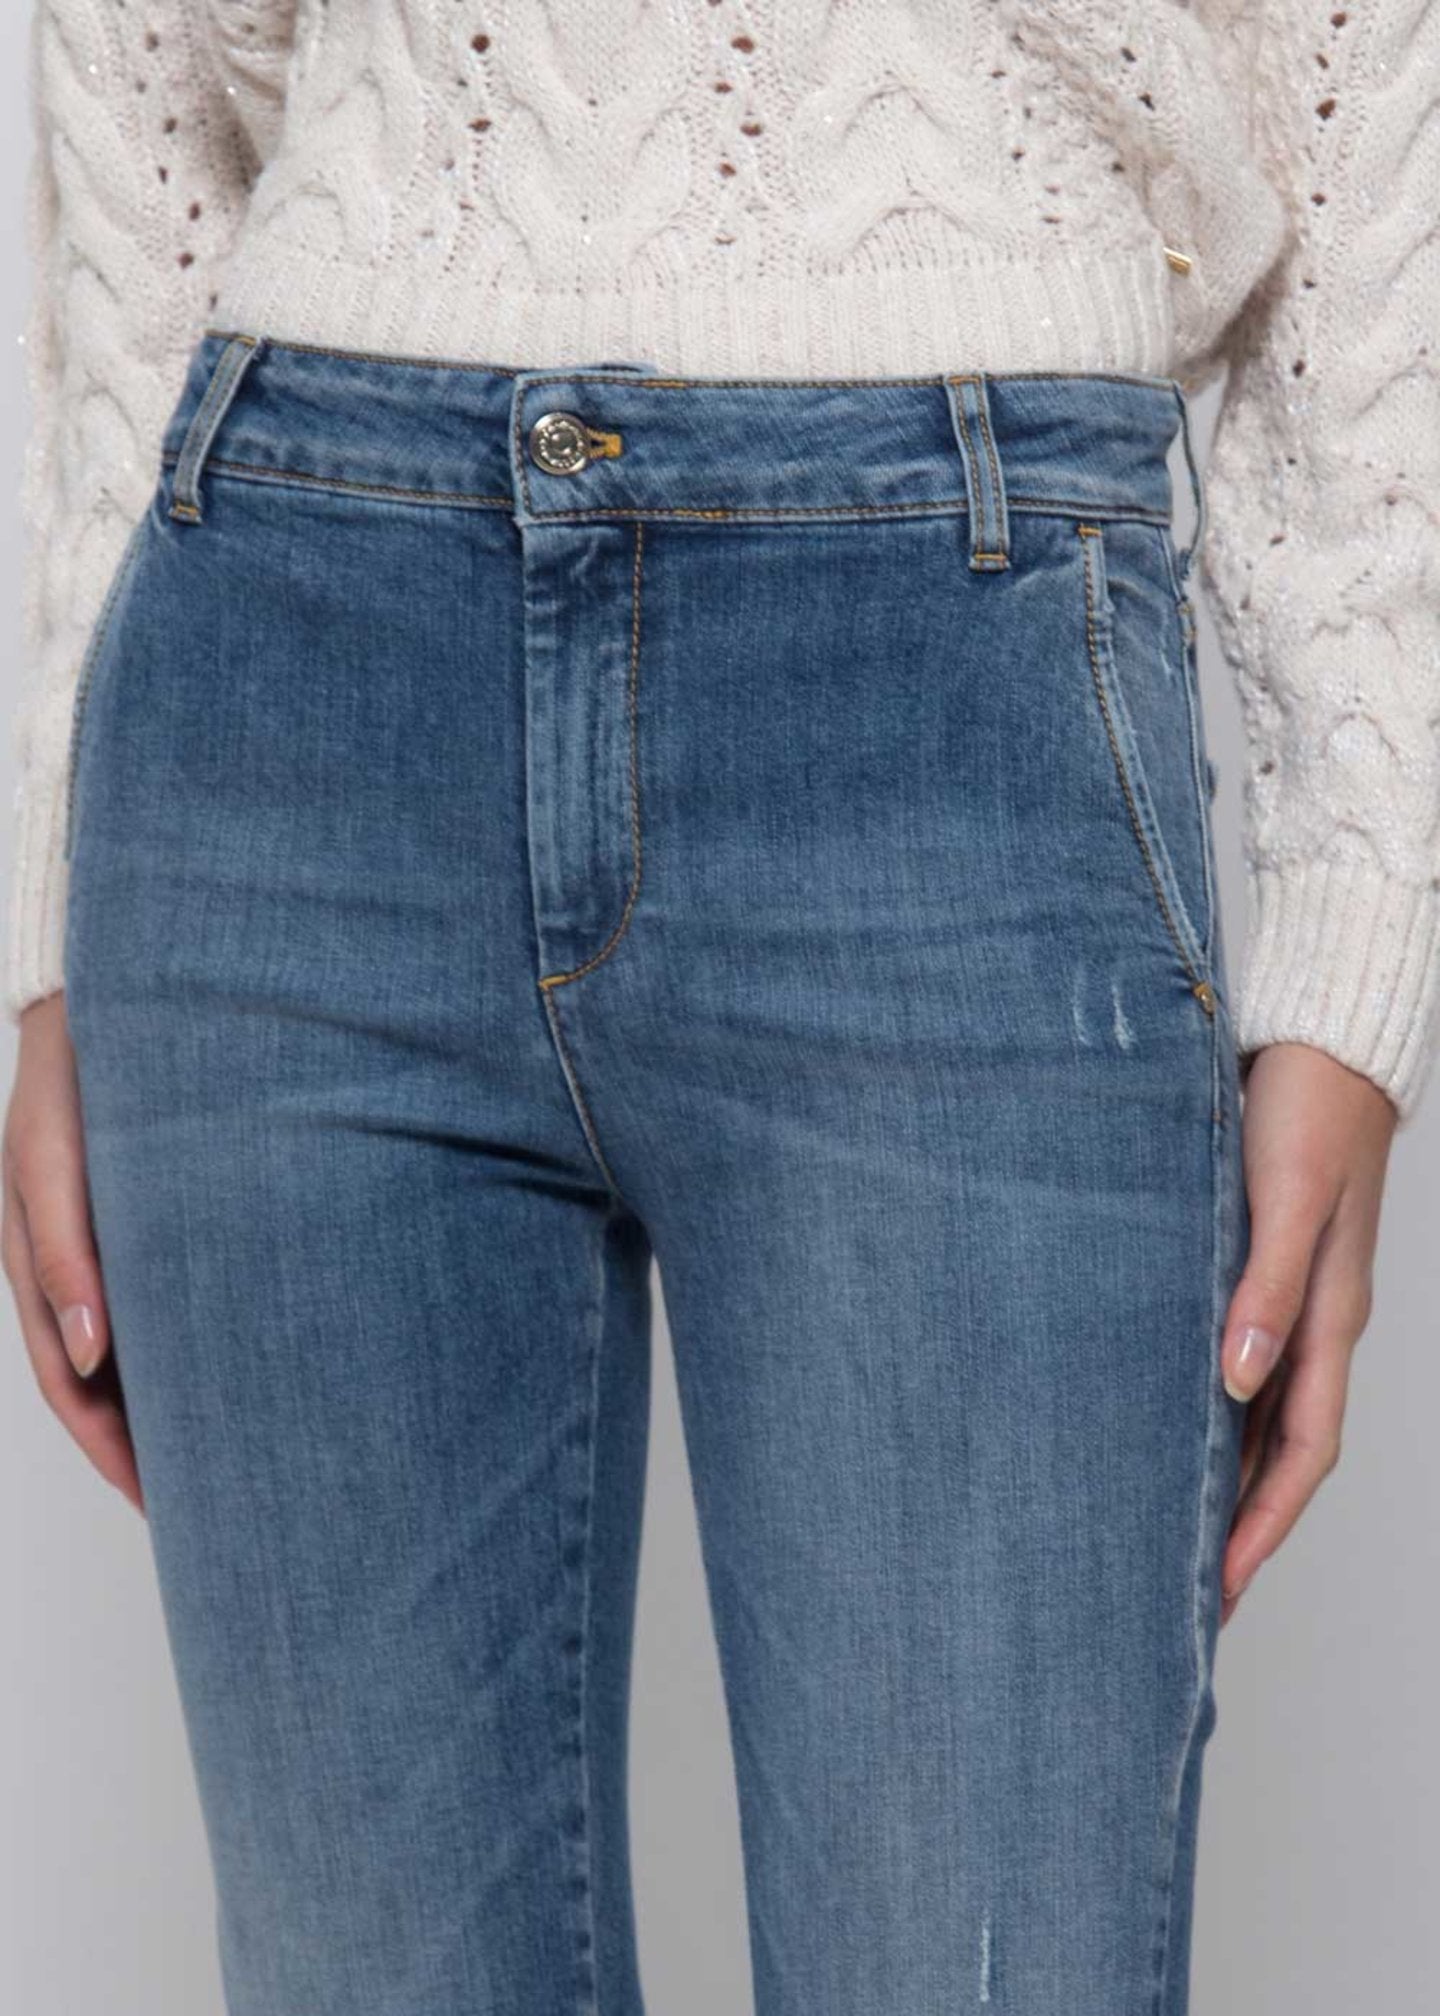 Jeans Kocca / Jeans - Ideal Moda